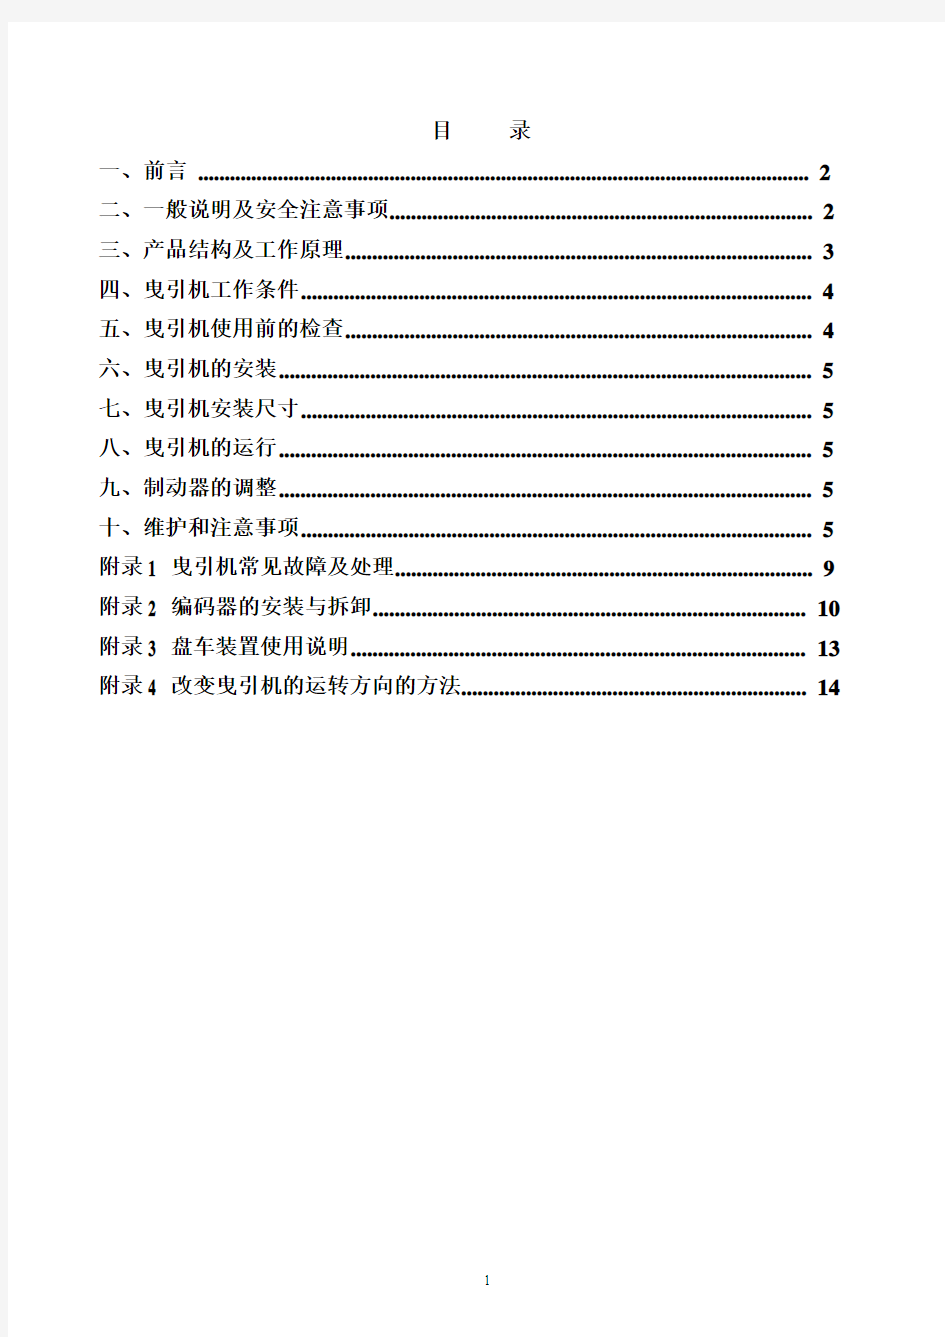 蓝光无齿轮永磁同步曳引机使用维护说明书A1(中文)